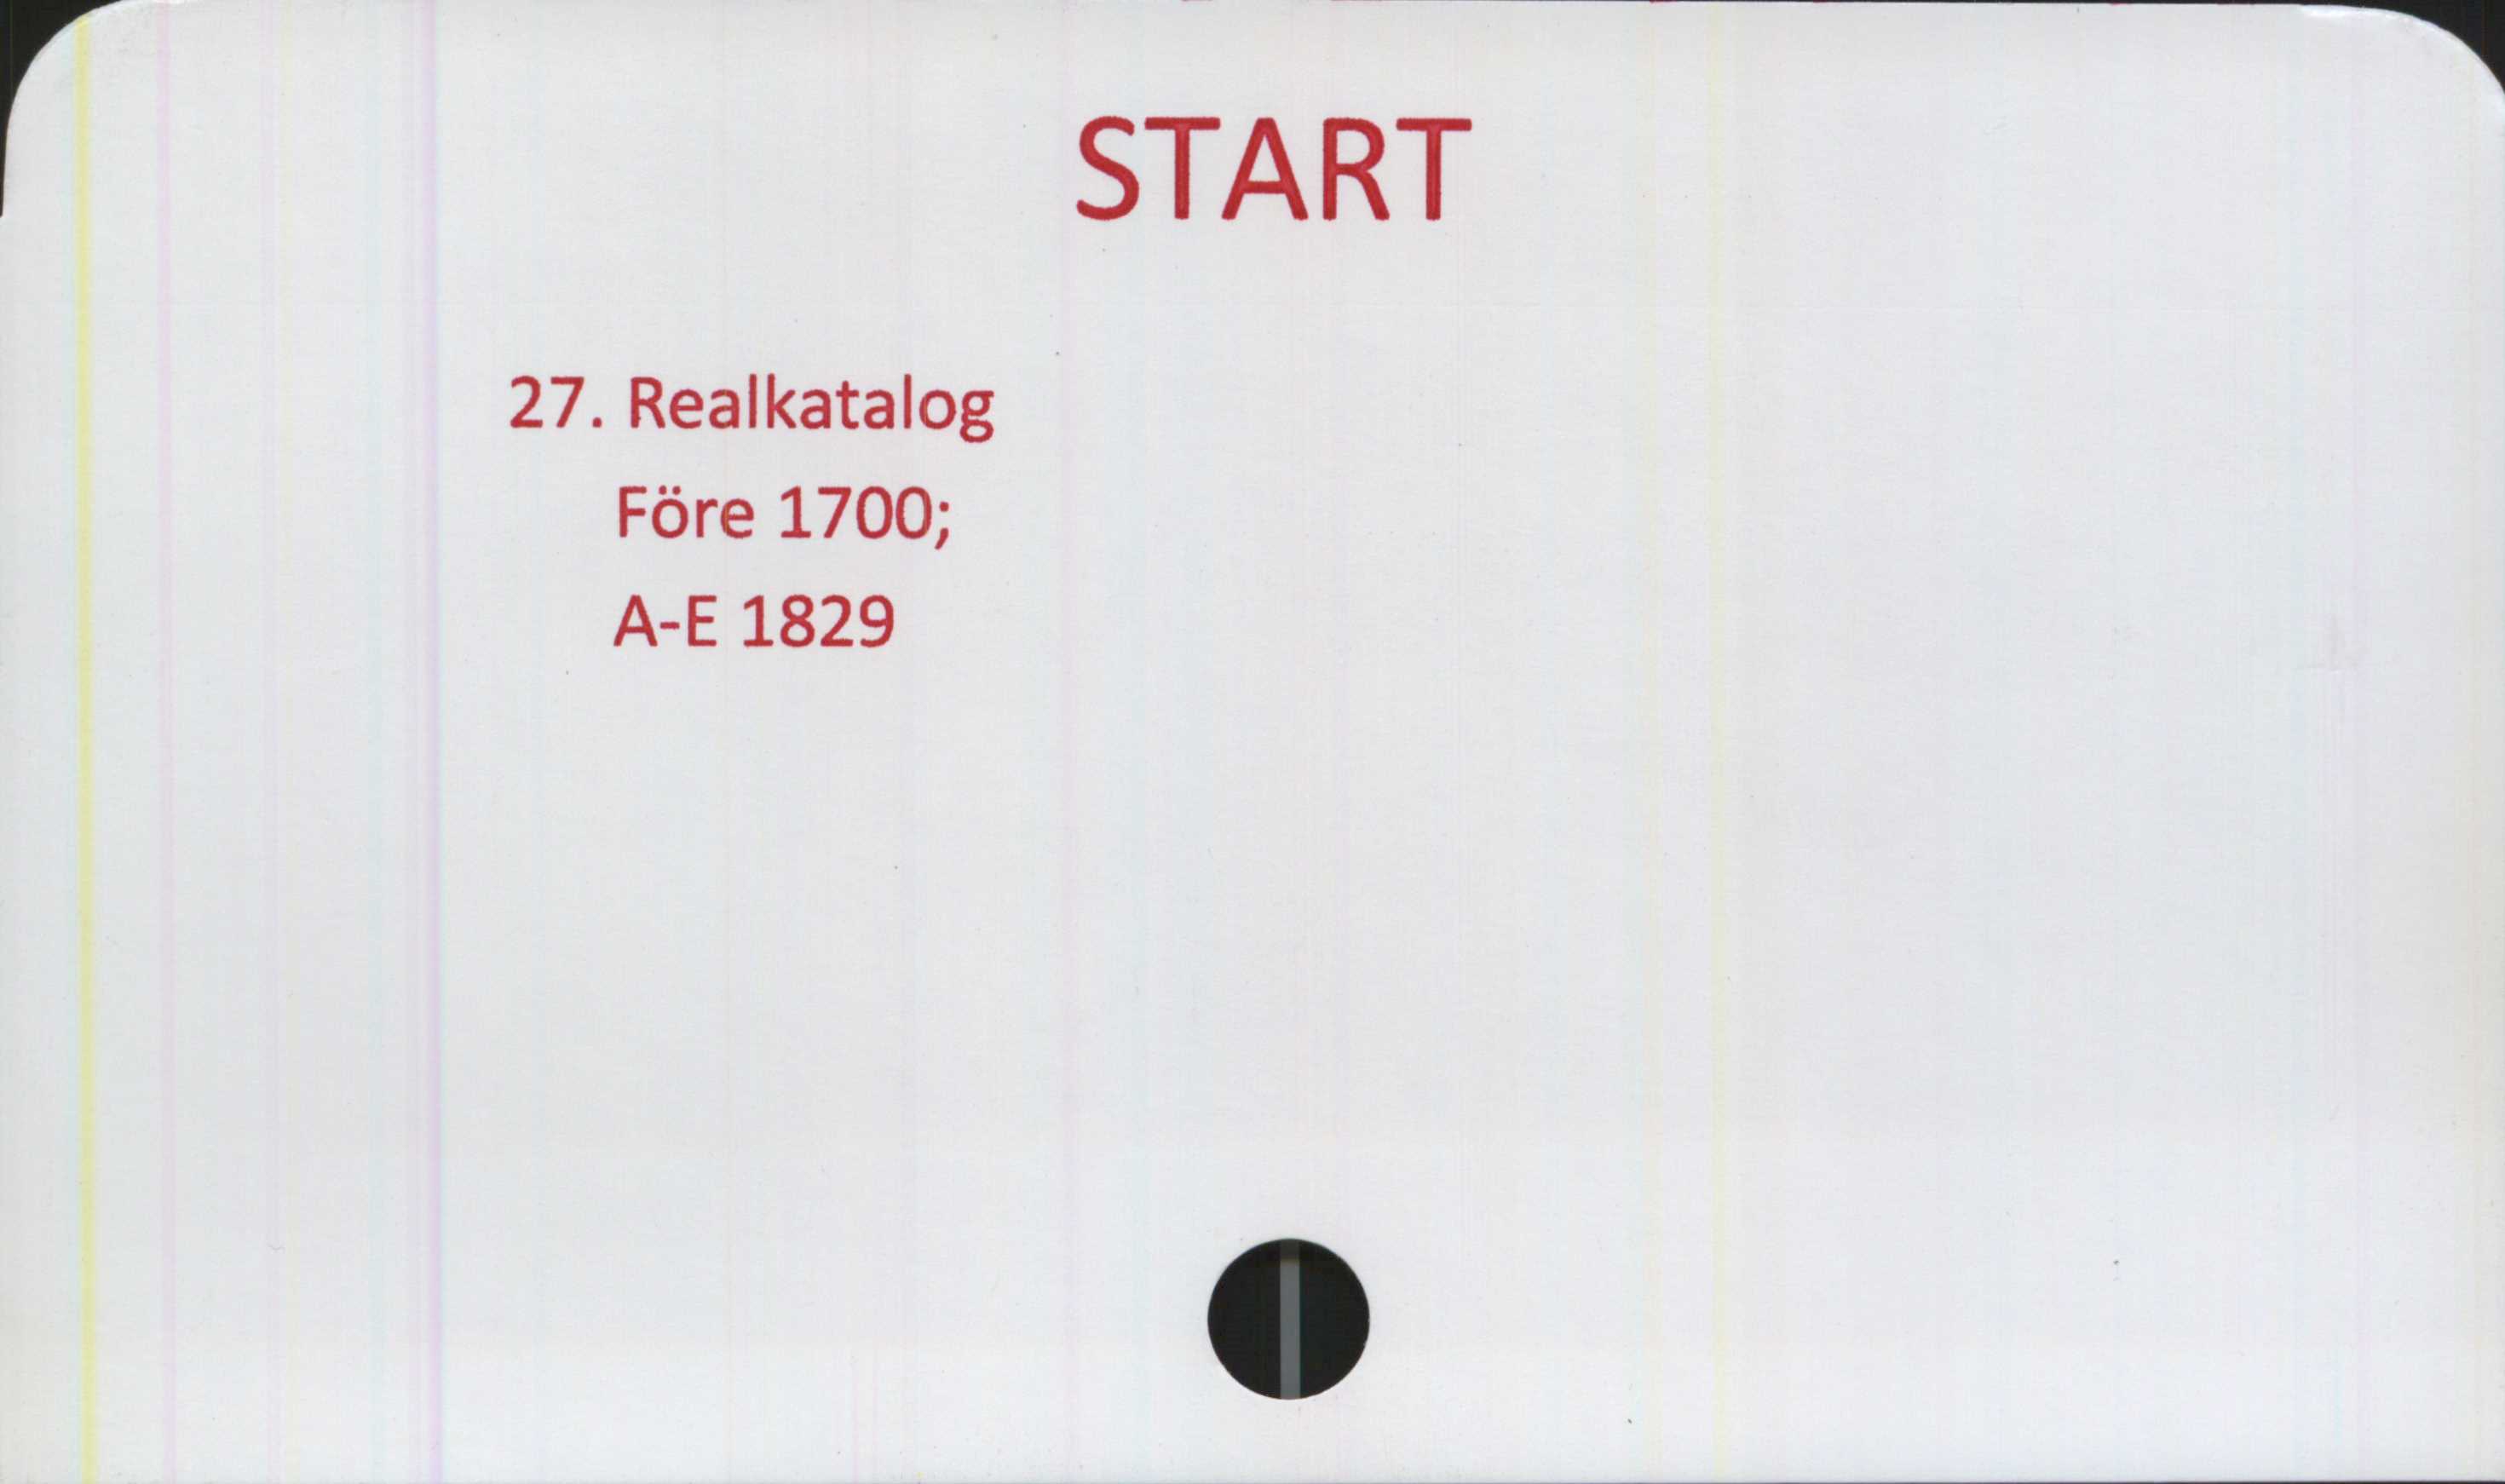  ﻿27. Realkatalog
Före 1700;
A-E 1829

START